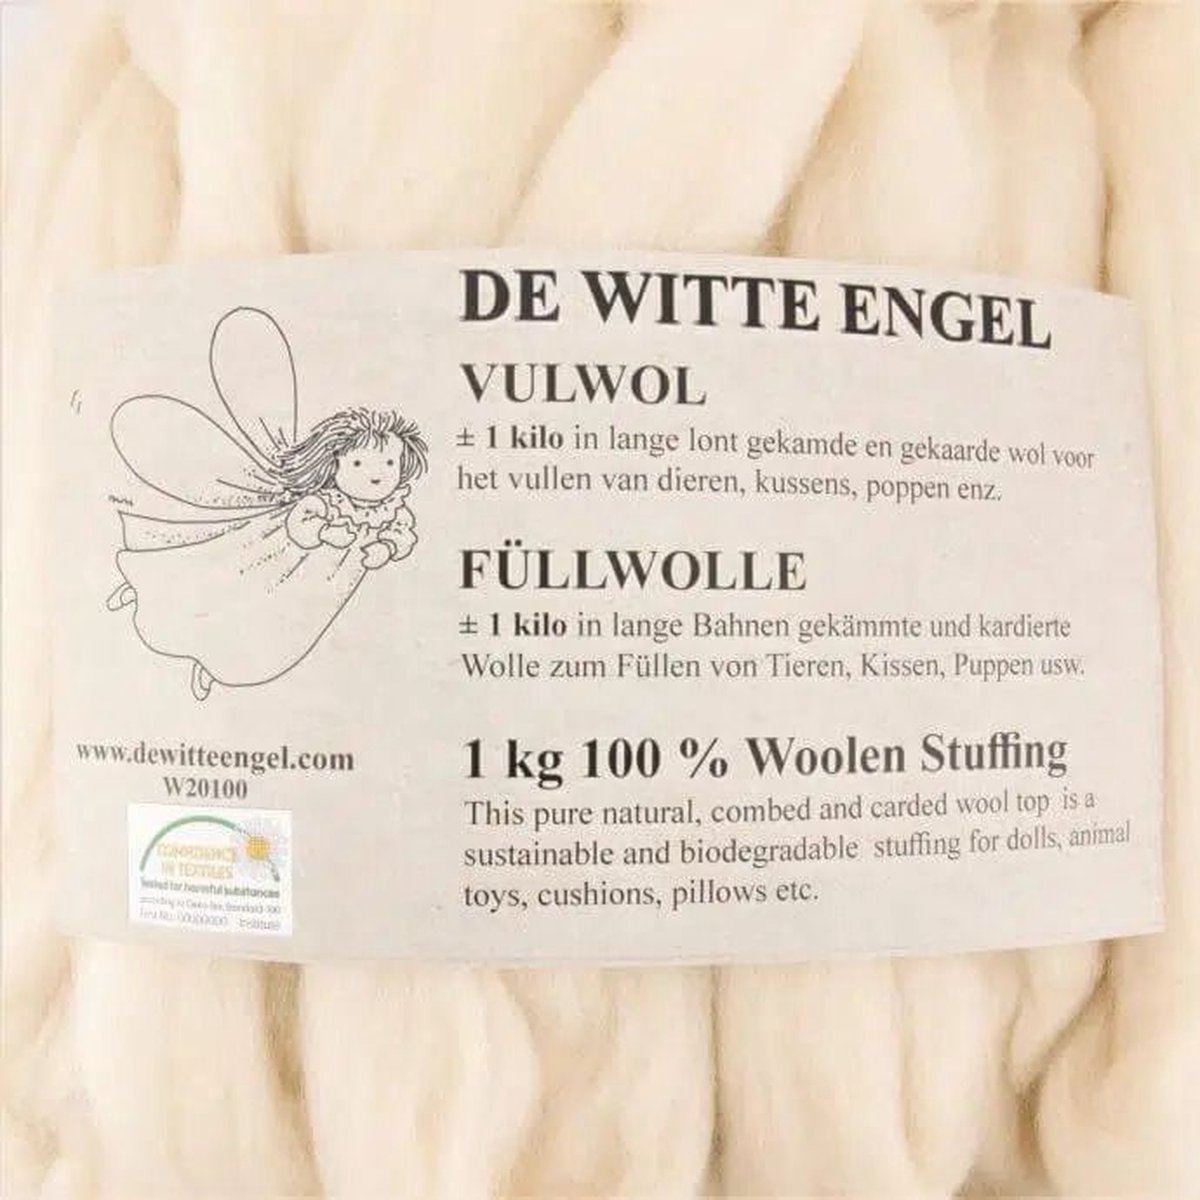 De Witte Engel - Vulwol - 1 kg - gewassen en gekaard in een lange lont - 